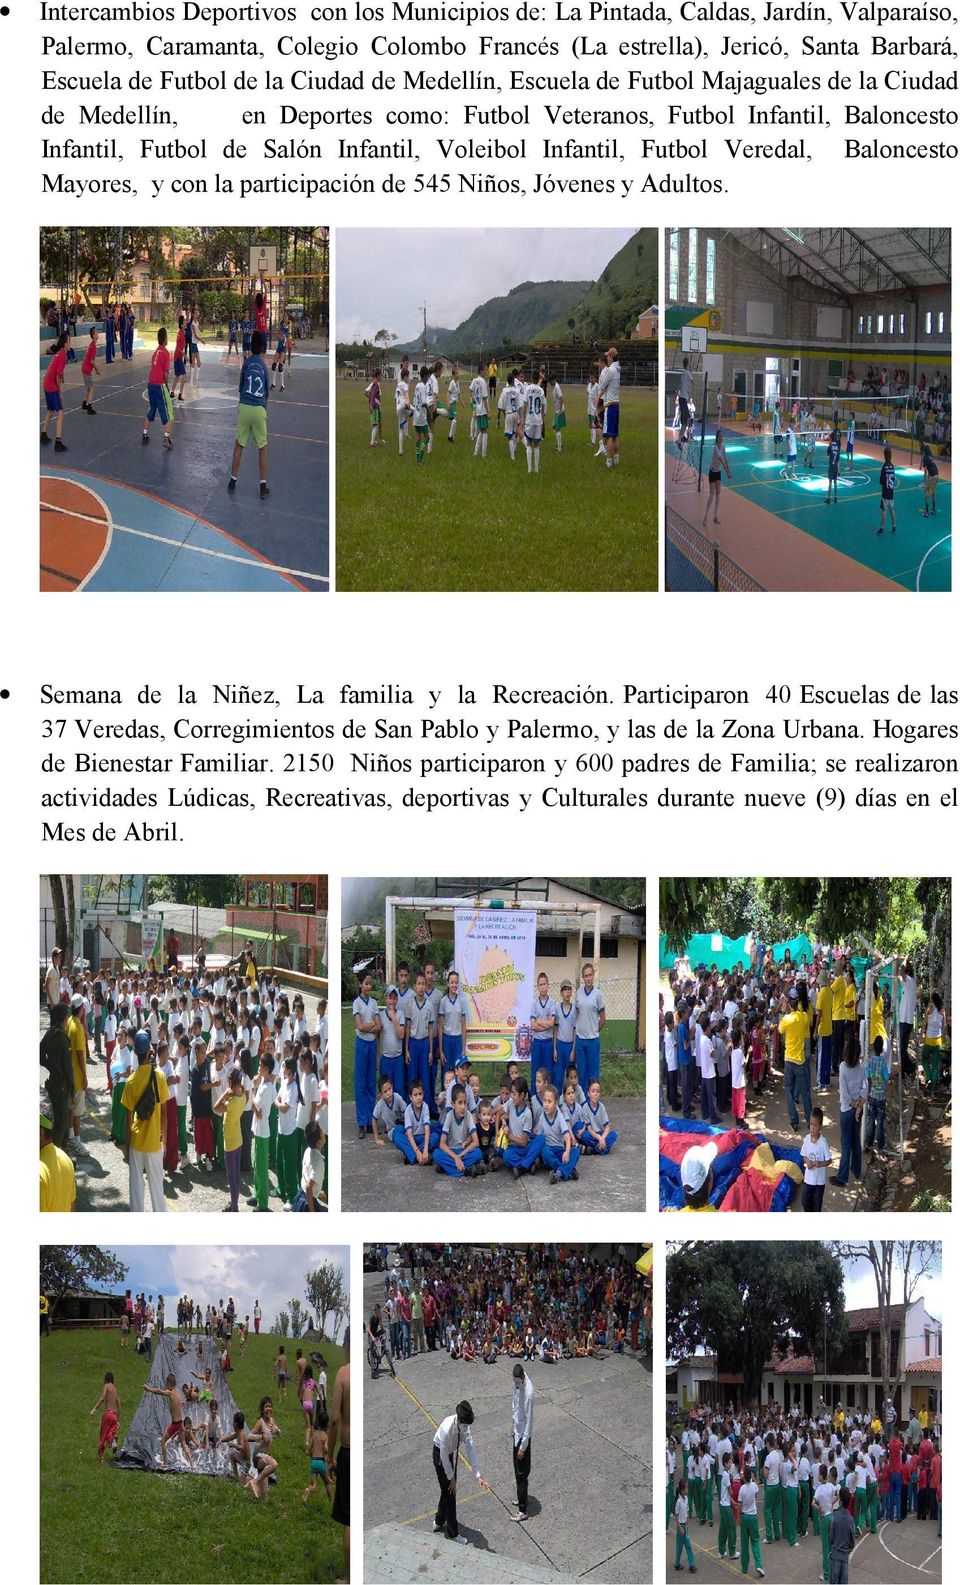 Veredal, Baloncesto Mayores, y con la participación de 545 Niños, Jóvenes y Adultos. Semana de la Niñez, La familia y la Recreación.